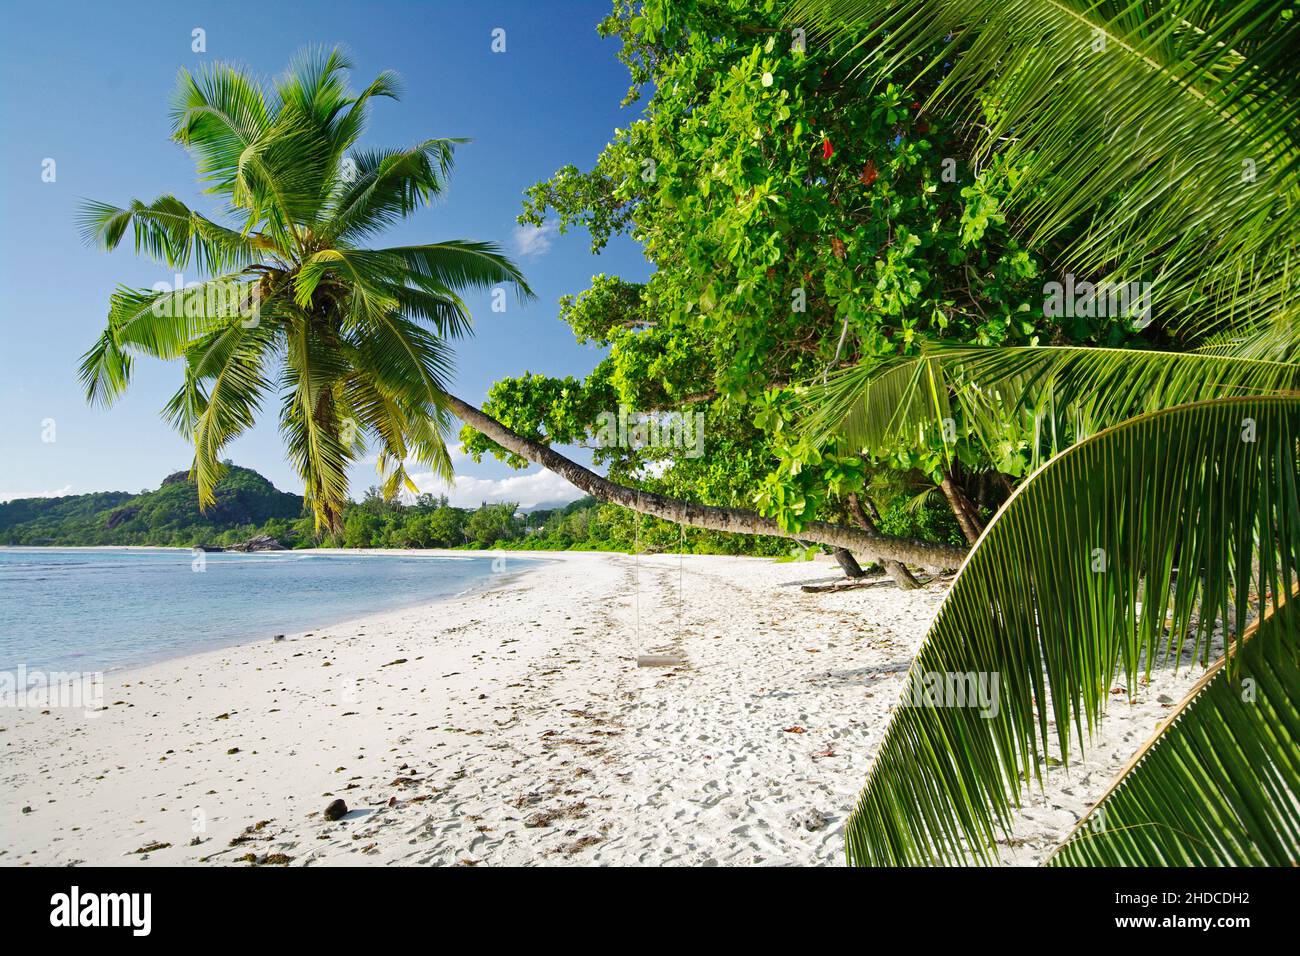 Palme Schaukel mit der Anse Gaulettes im süd westen der Insel Mahe, Seychellen Foto de stock